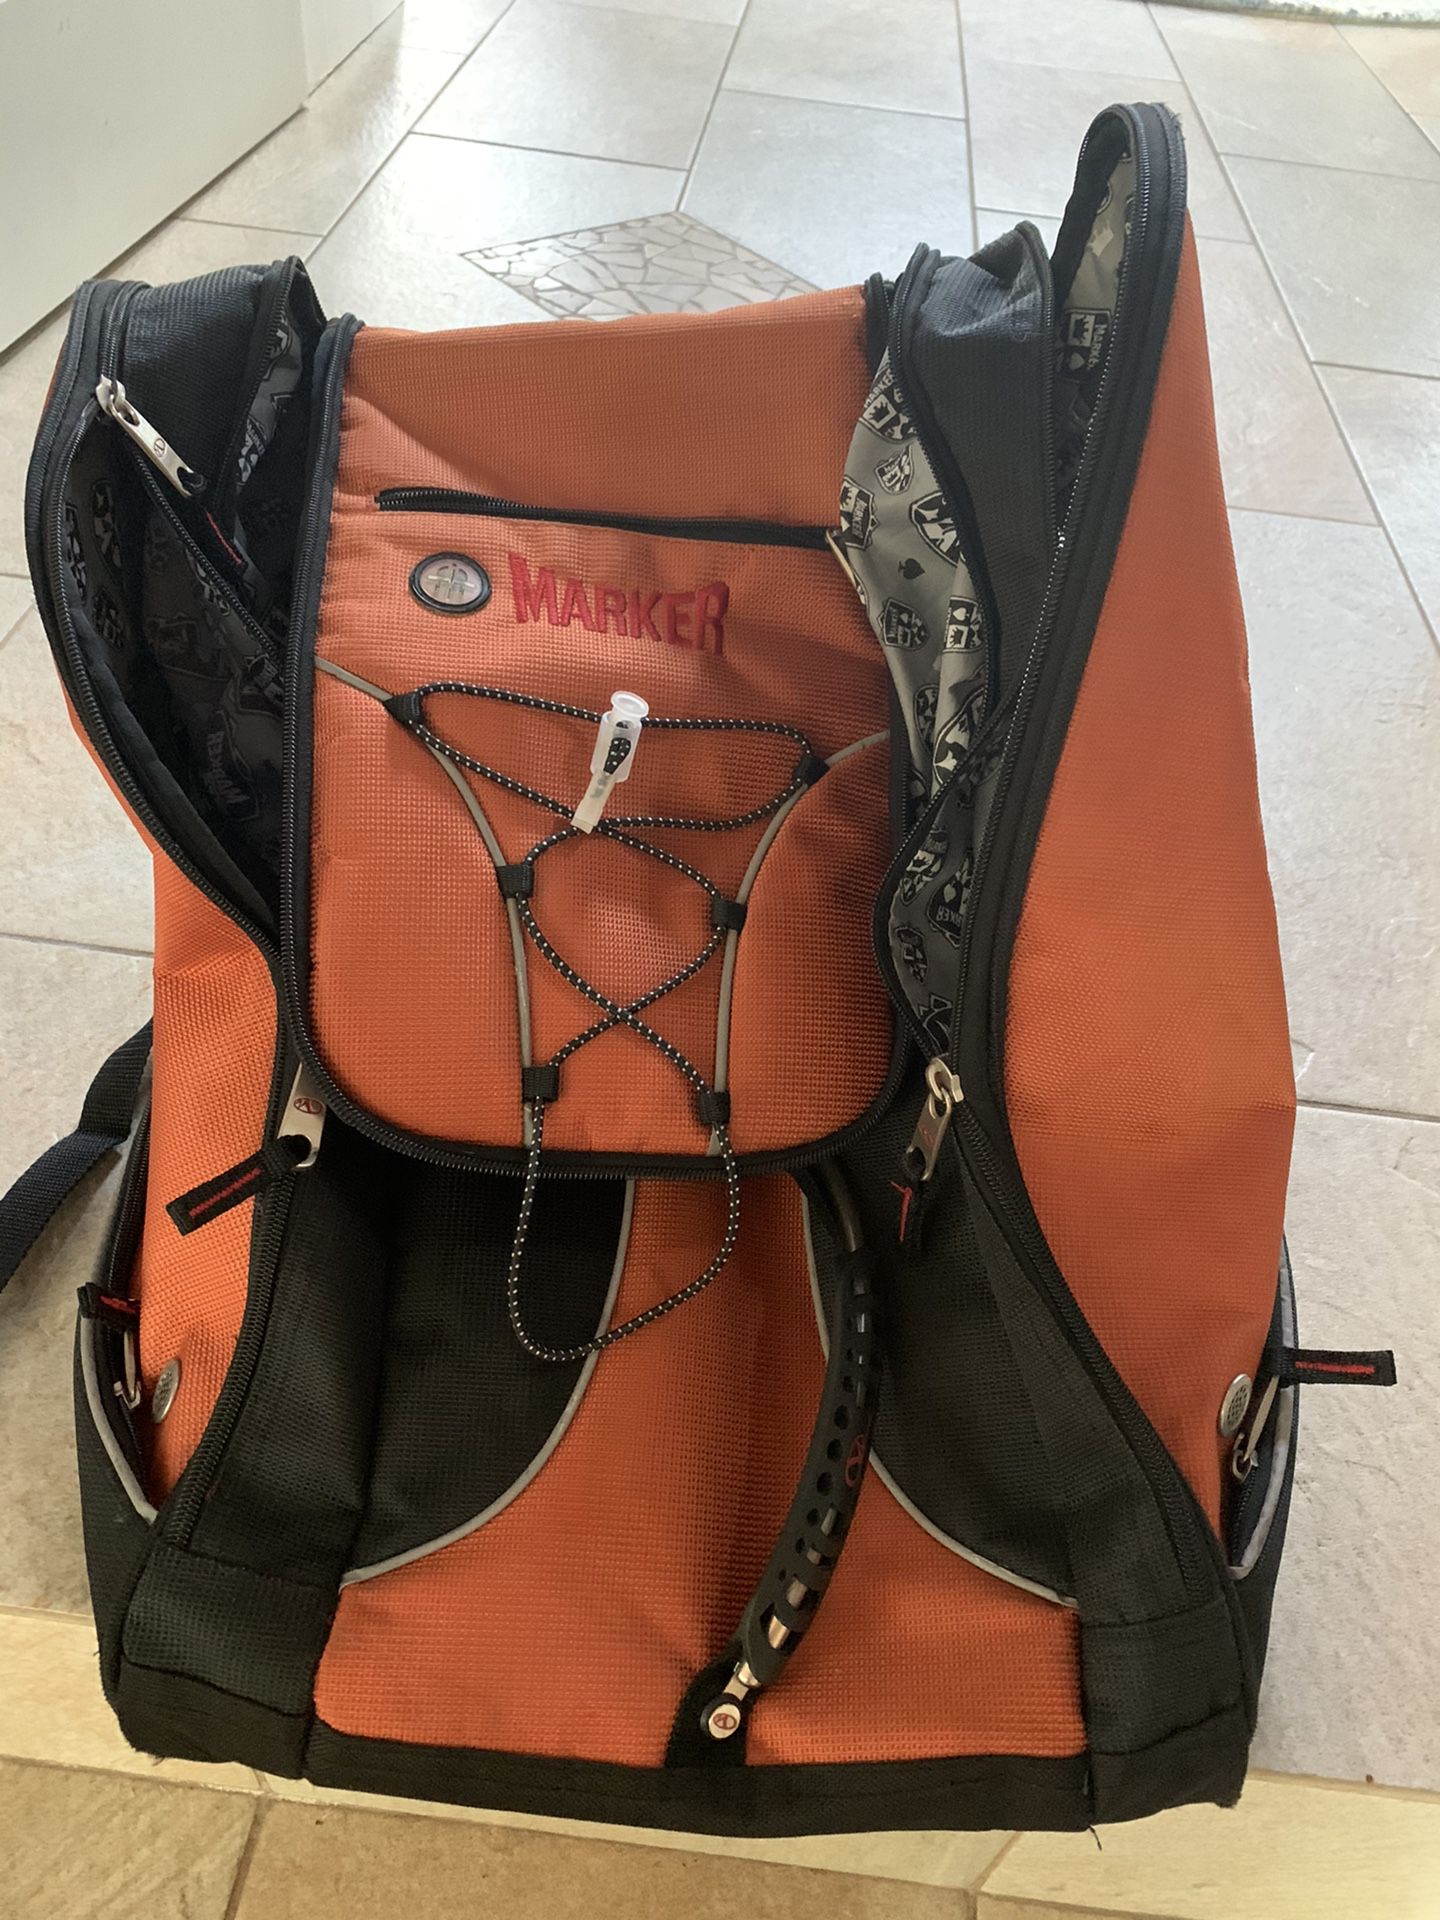 Ski boot bag/backpack